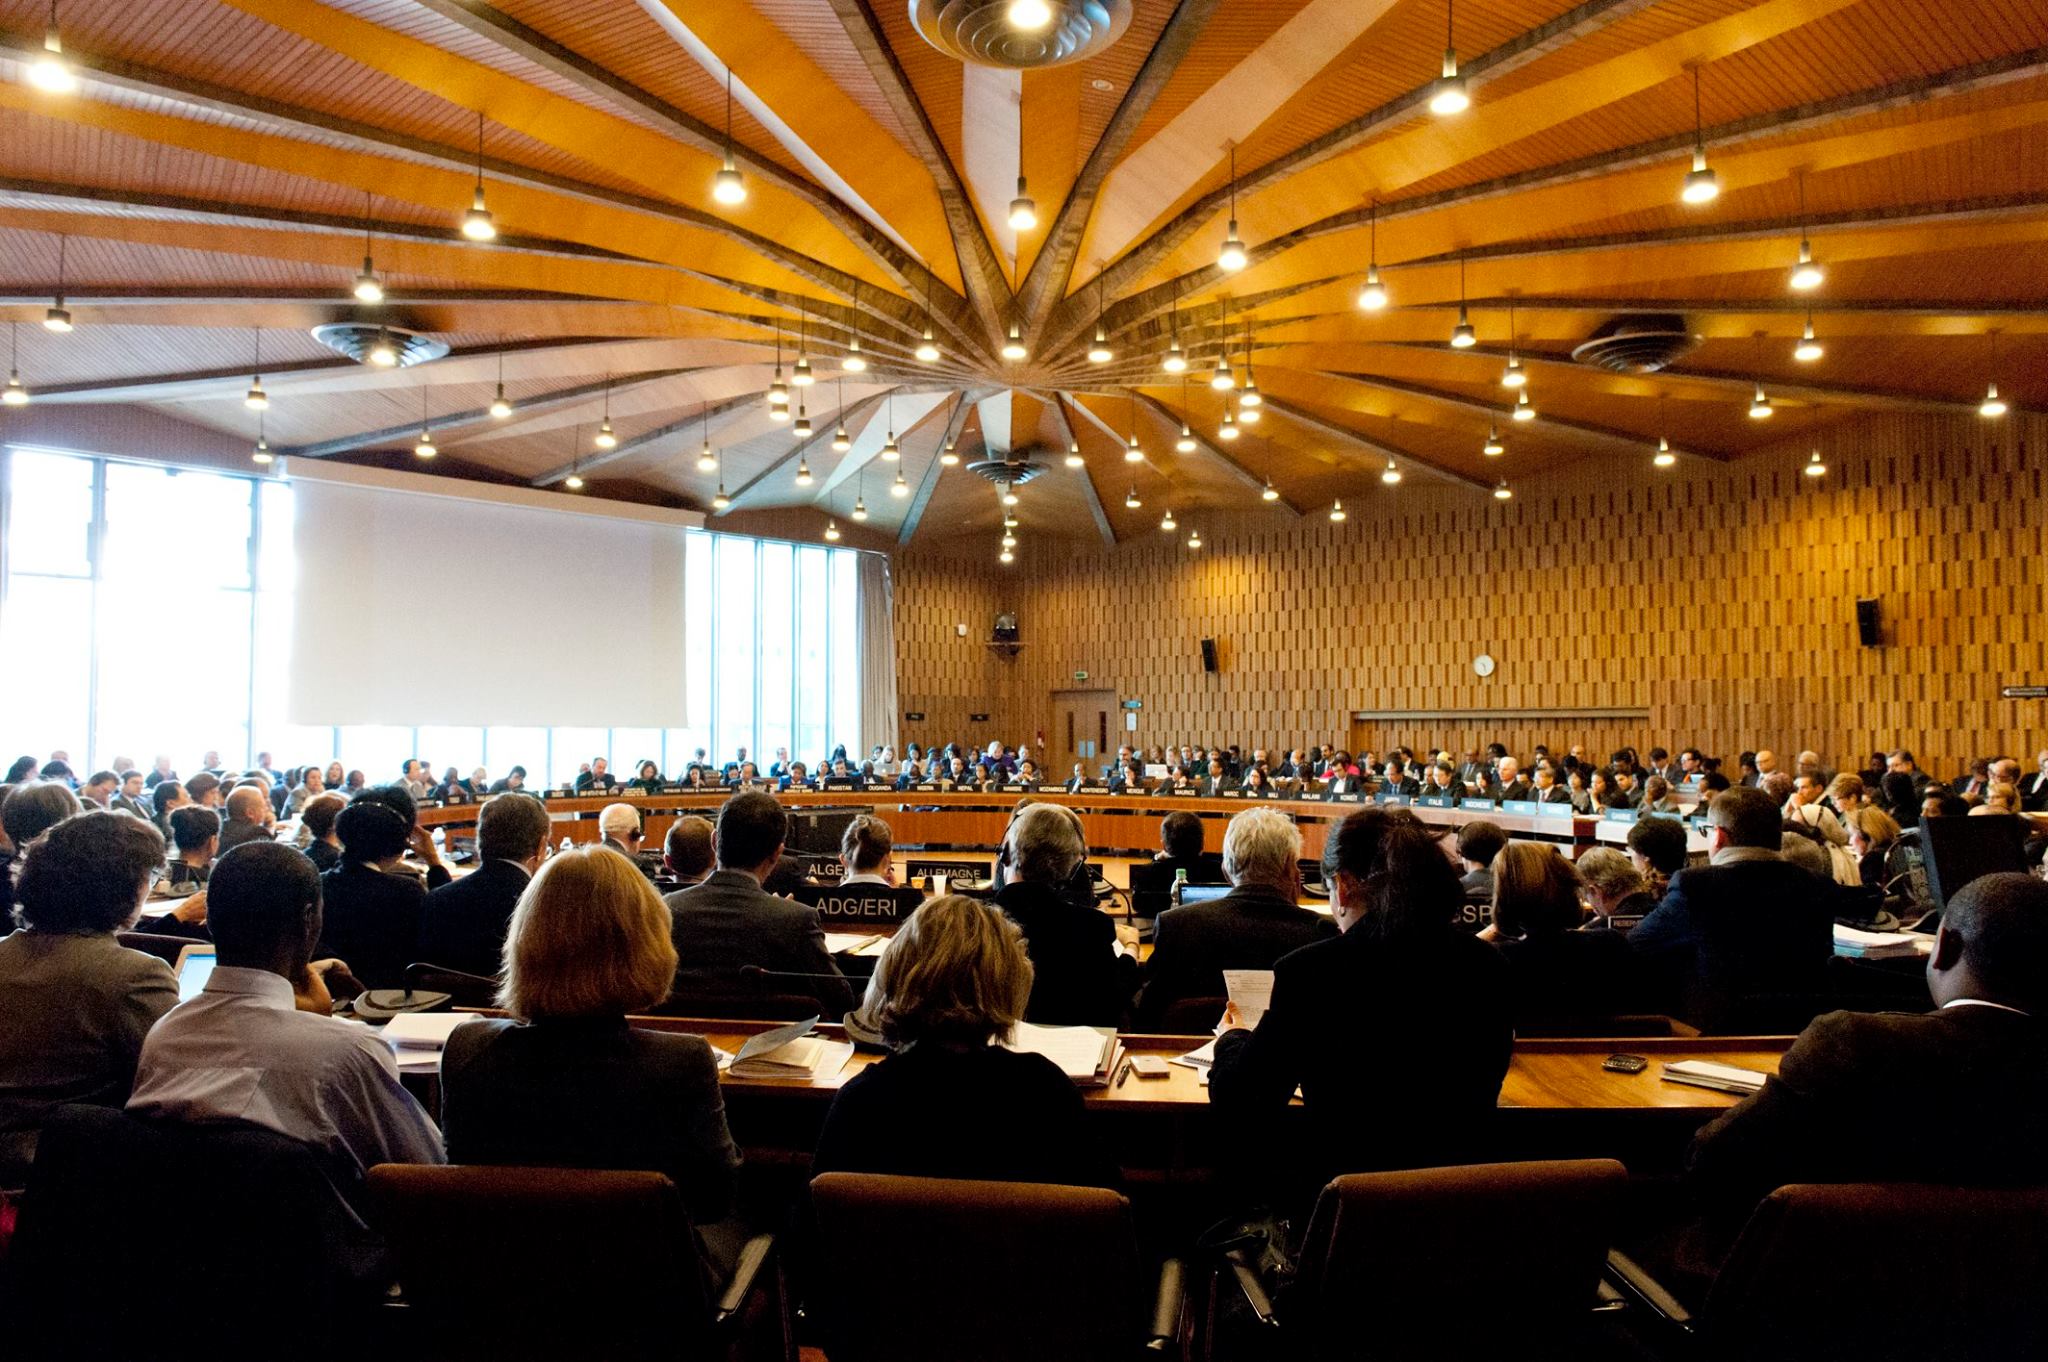 UNESCO Executive Board Meeting 49 